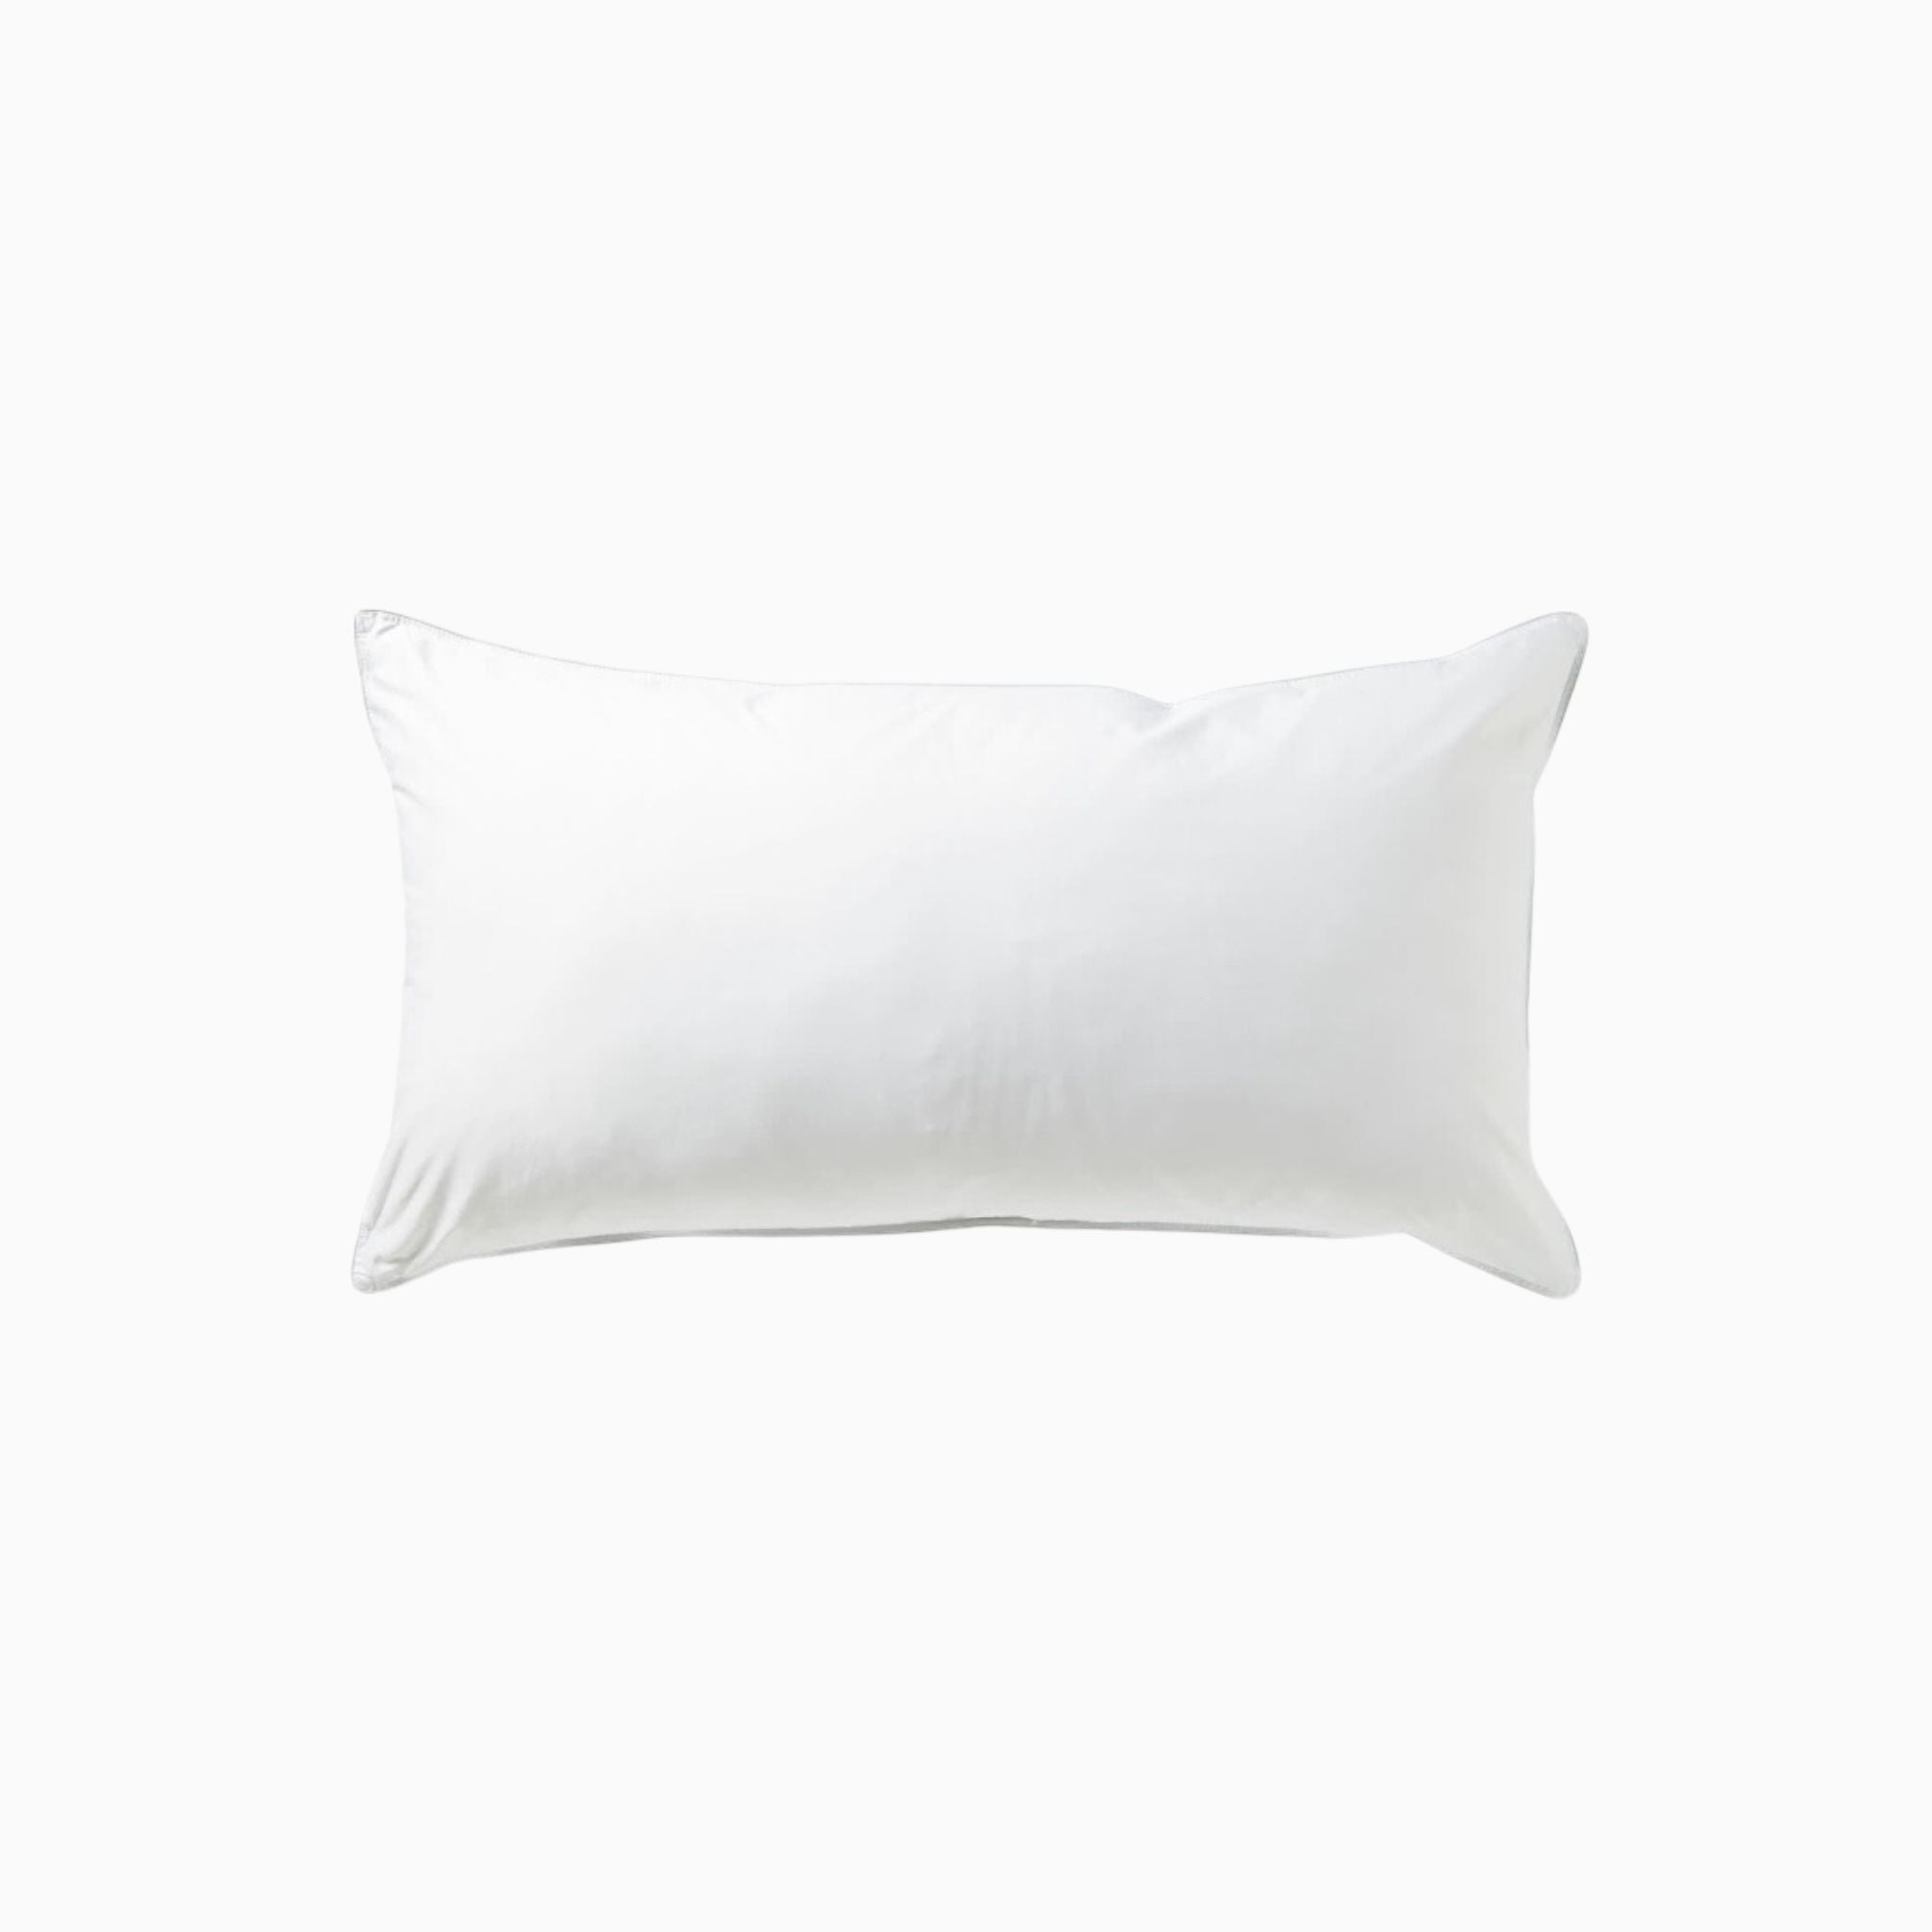 Pillow Insert 26x18